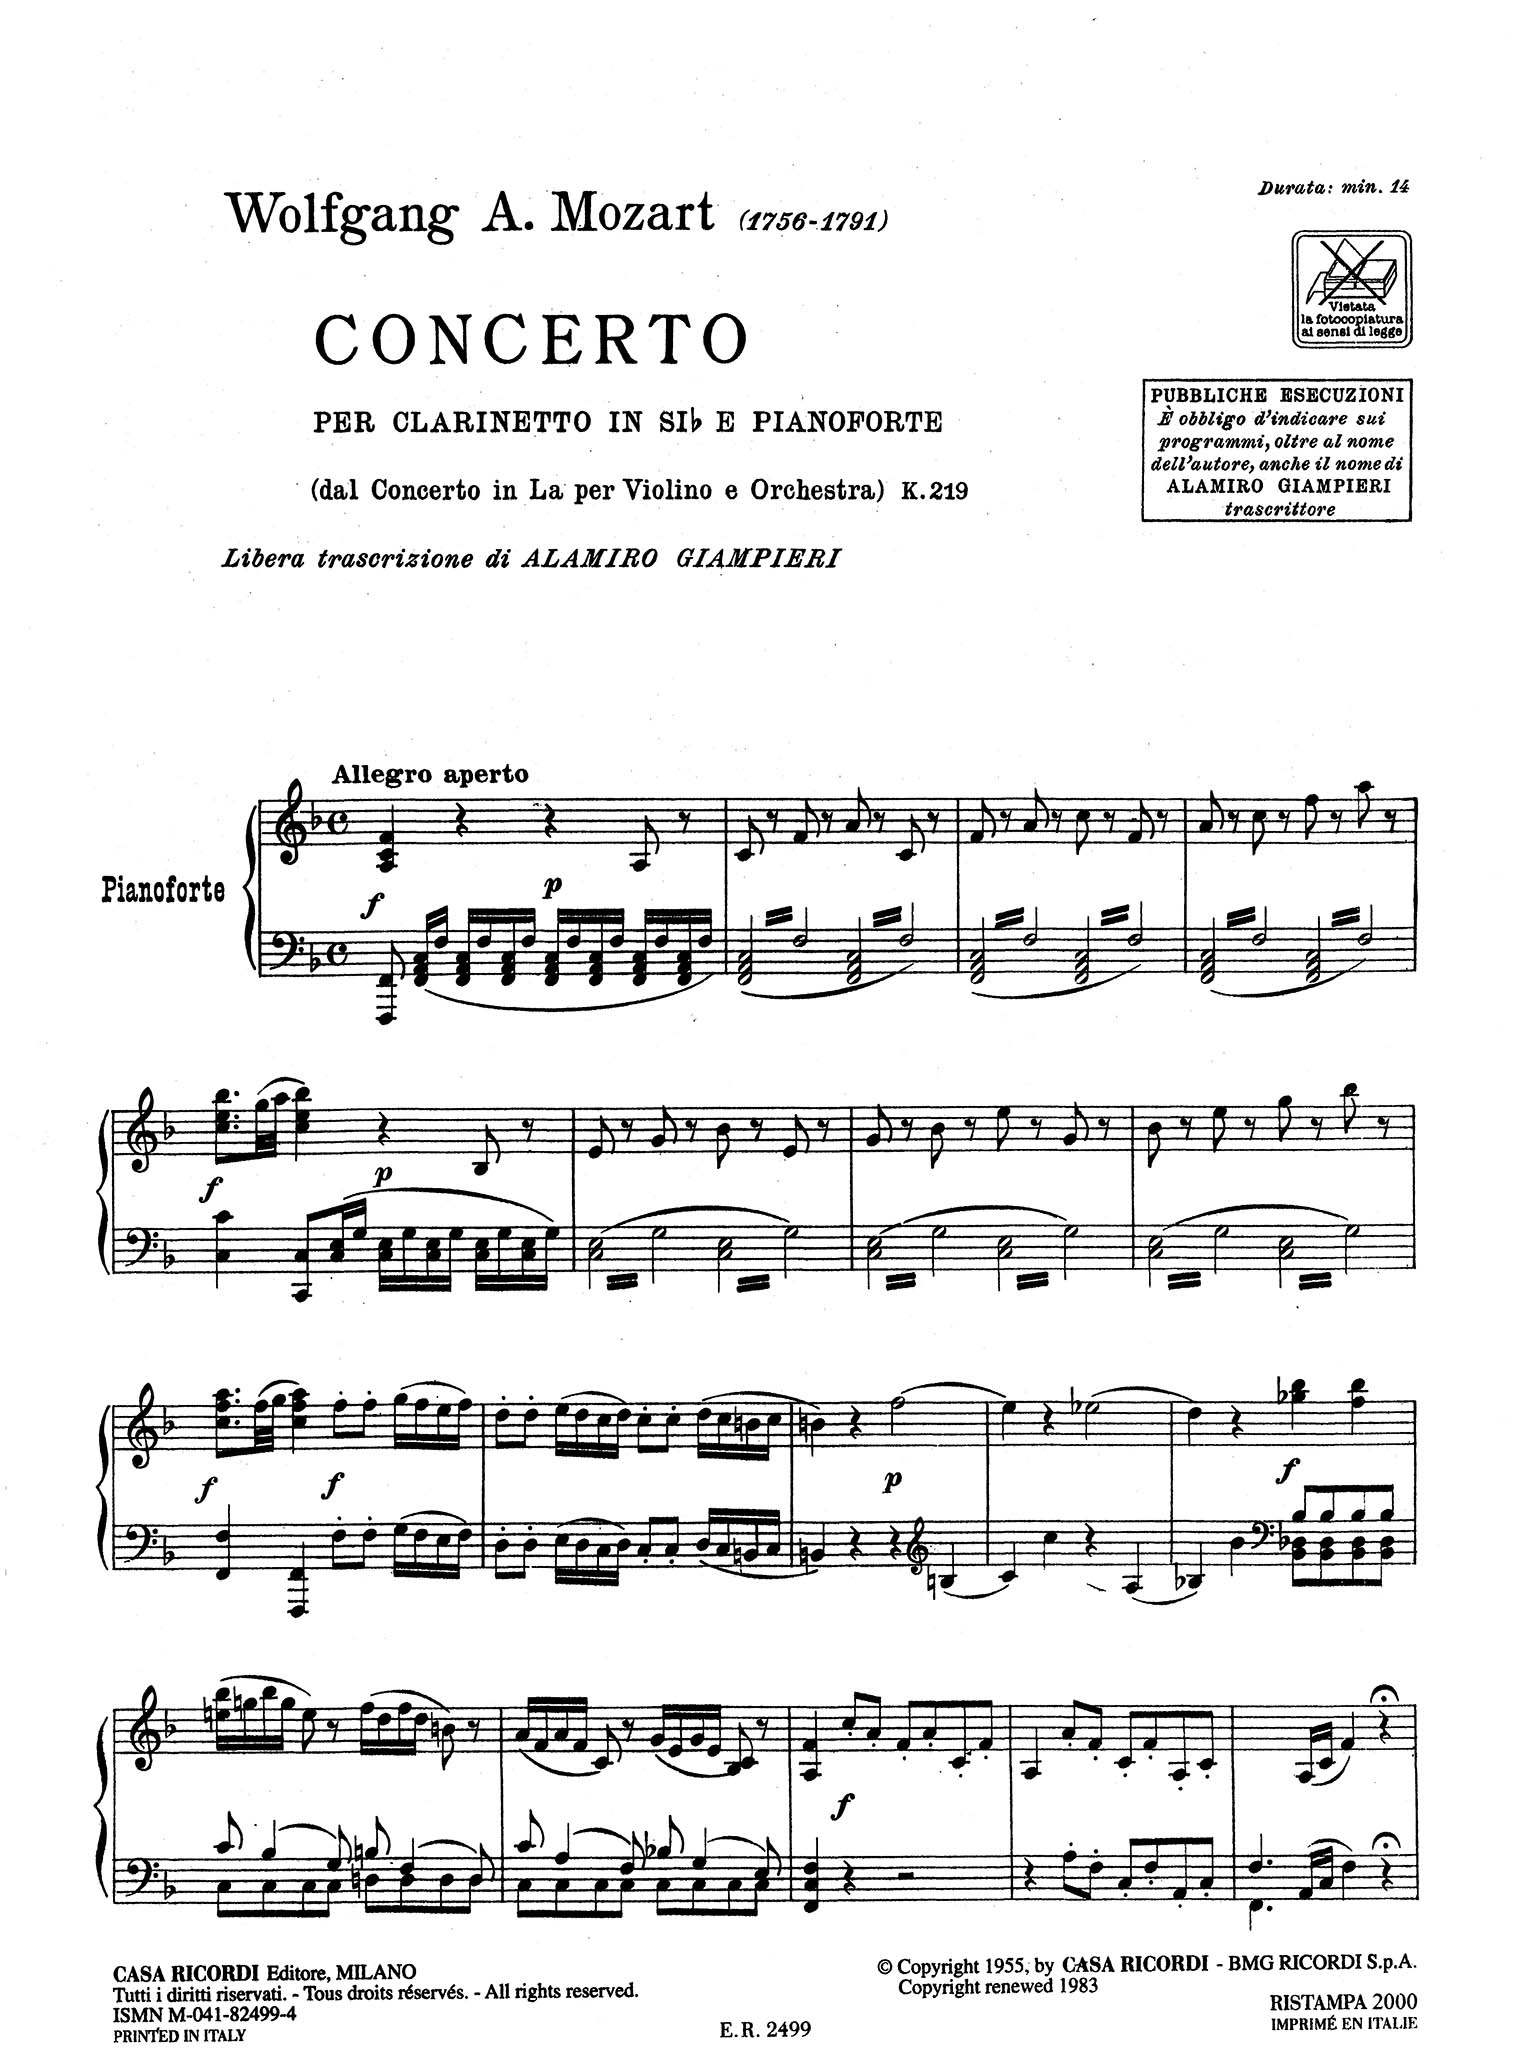 Violin Concerto No. 5, K 219 - Movement 1